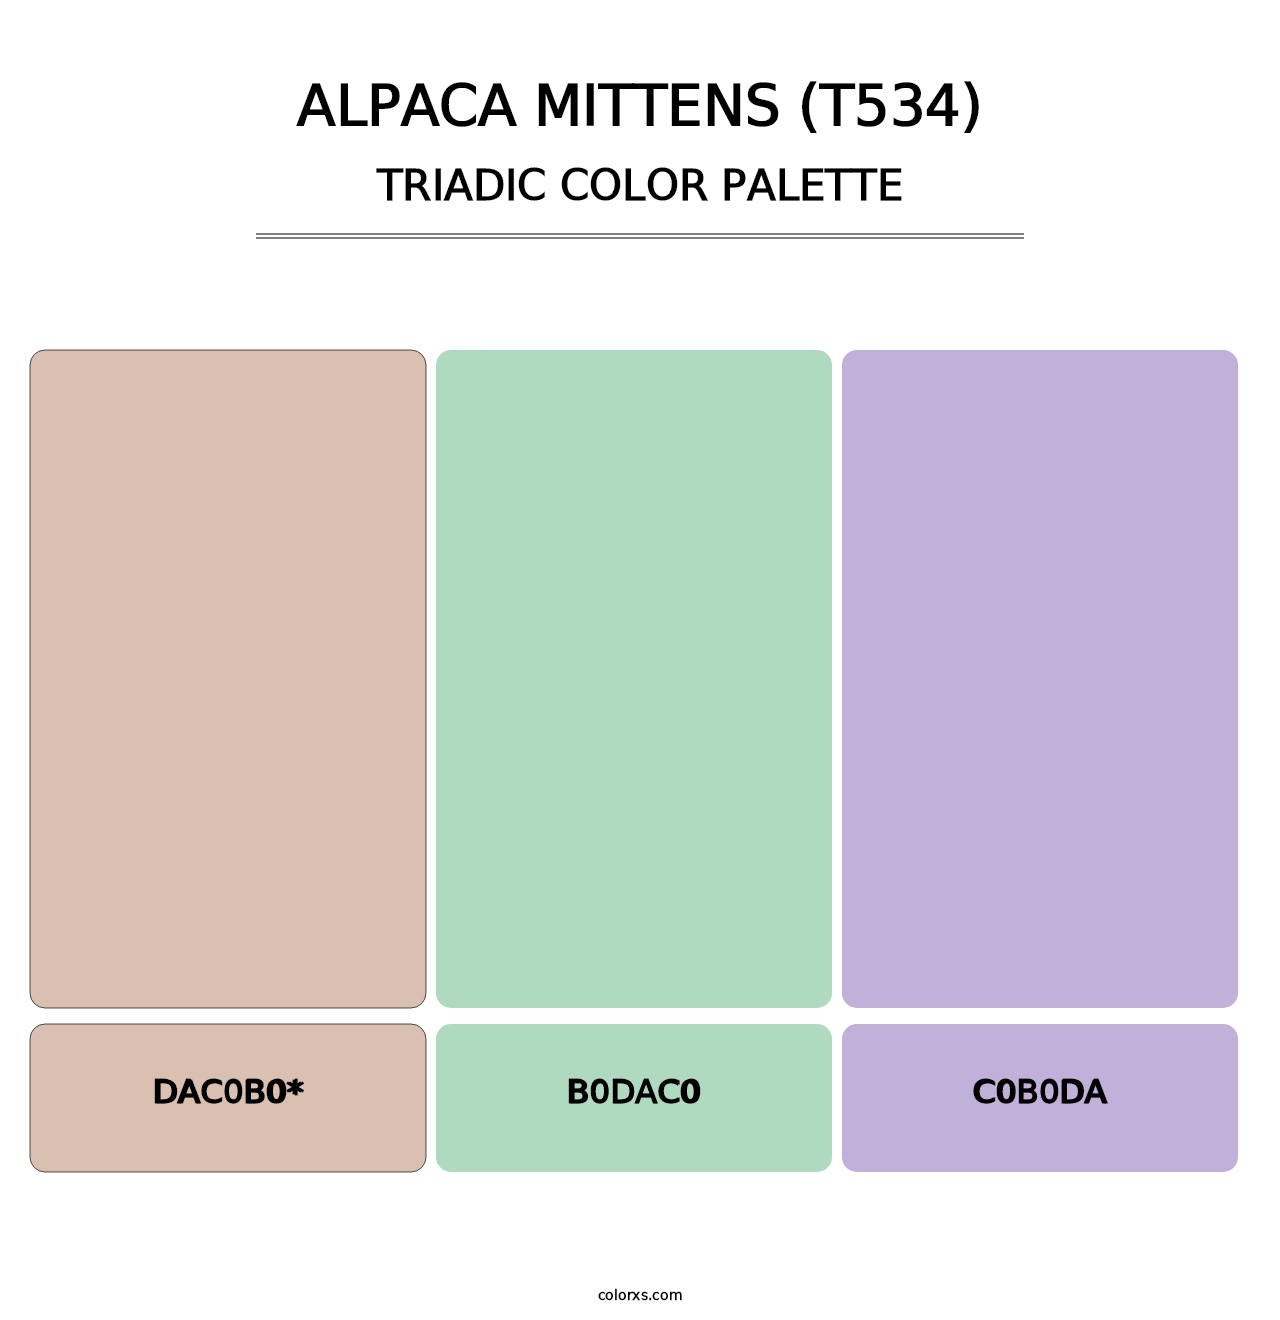 Alpaca Mittens (T534) - Triadic Color Palette